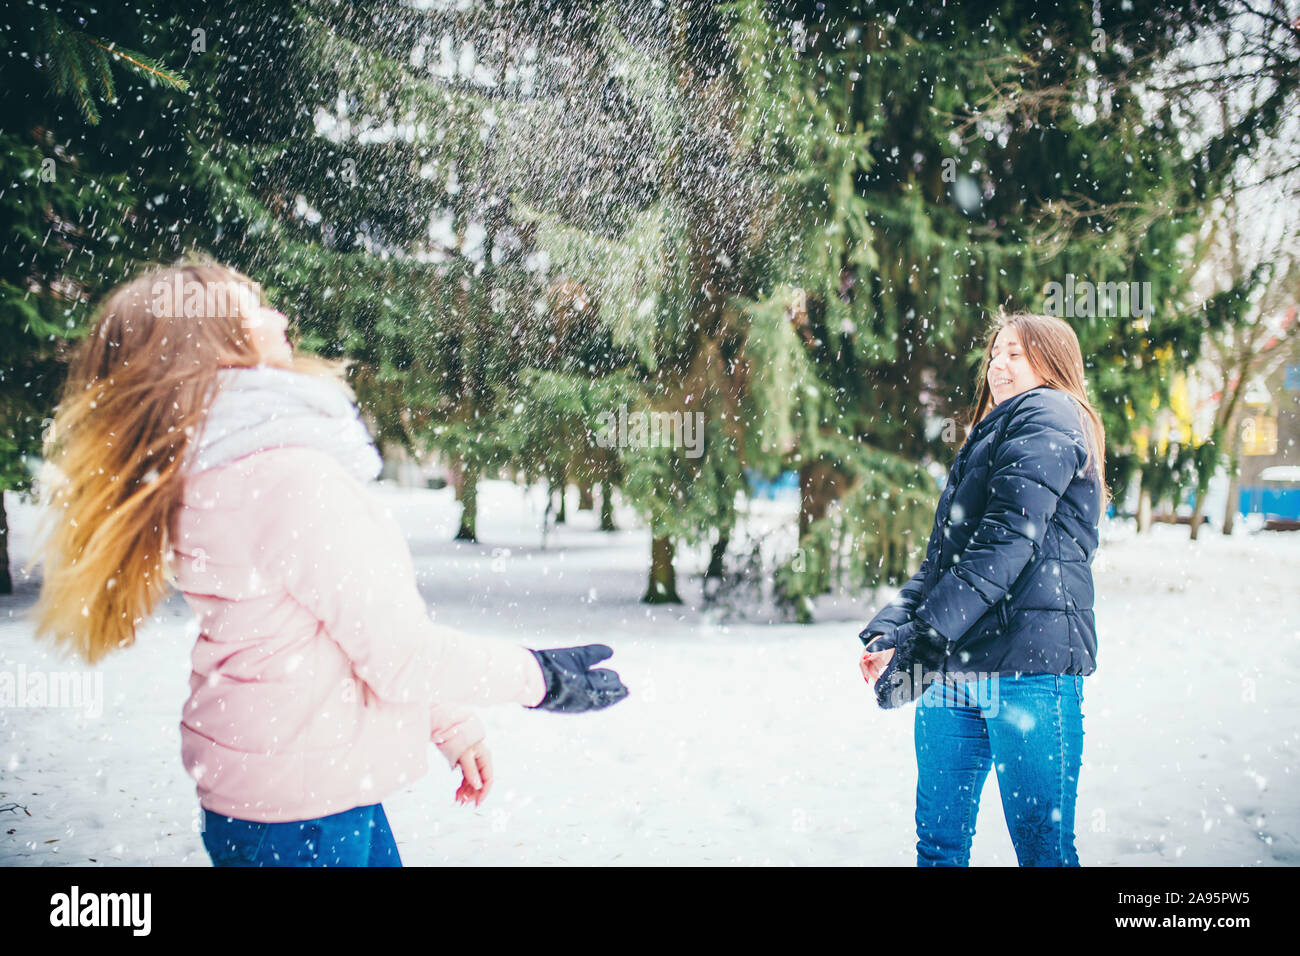 Abschied von der Kindheit - zwei junge Freundinnen werfen Schneebälle im Winter Wald Stockfoto